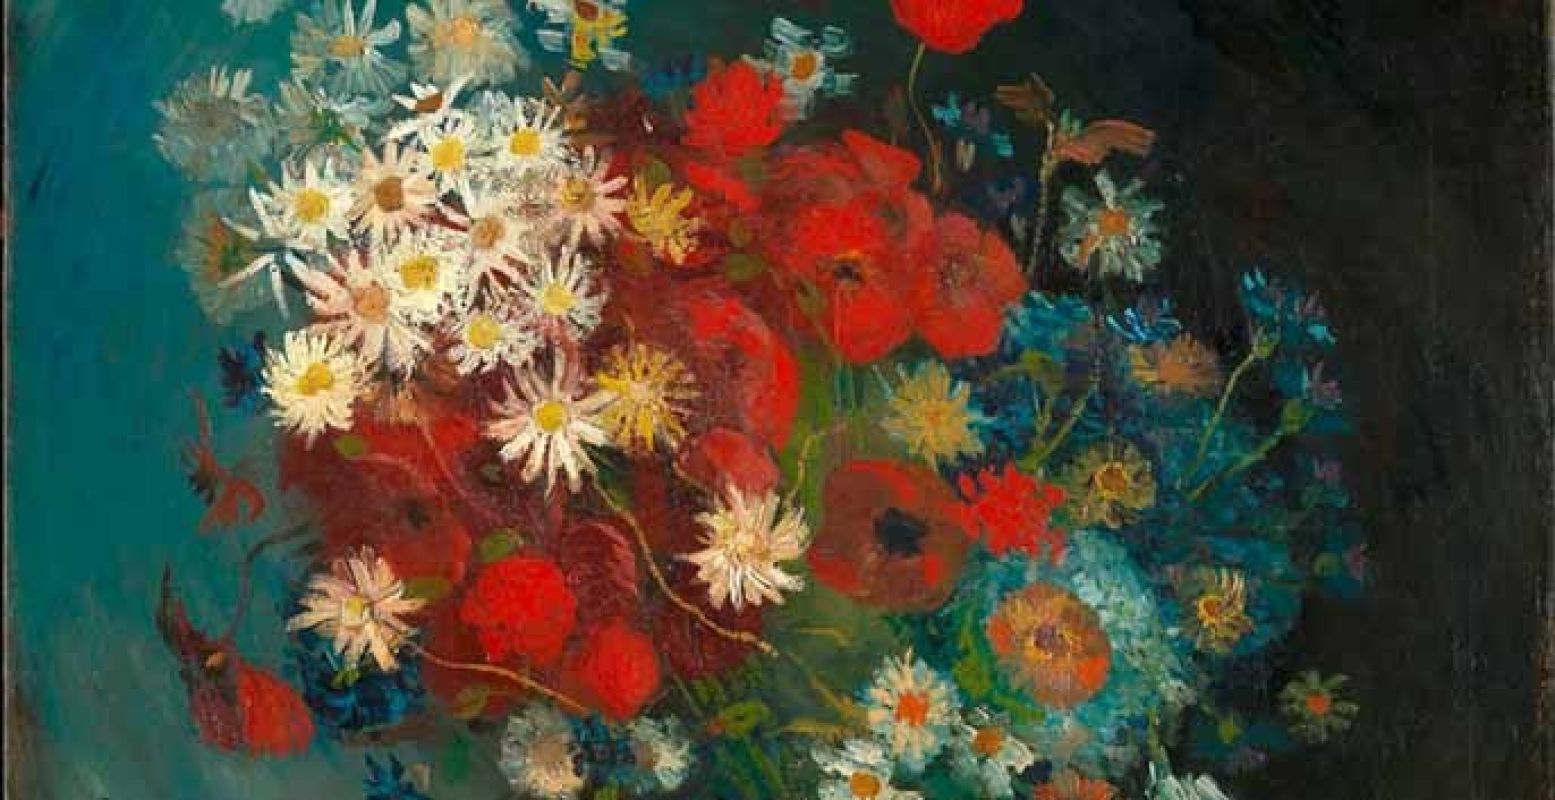 Stilleven met akkerbloemen en rozen, het overgeschilderde schilderij, door Vincent van Gogh